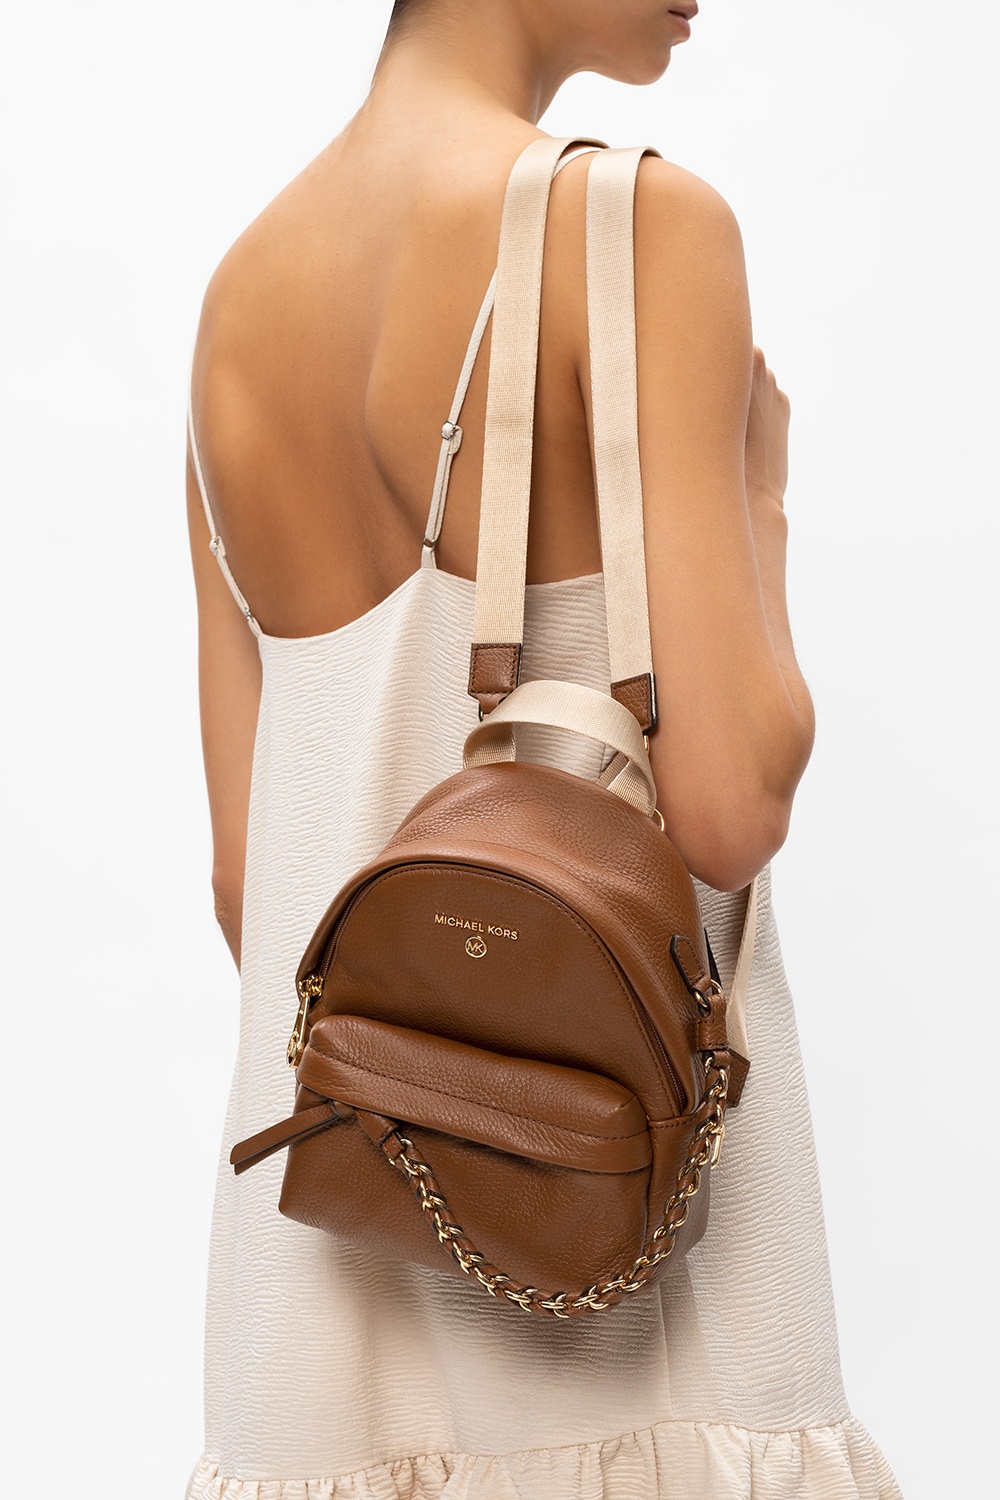 Buy MICHAEL Michael Kors Black Slater Medium Backpack for Women Online   Tata CLiQ Luxury